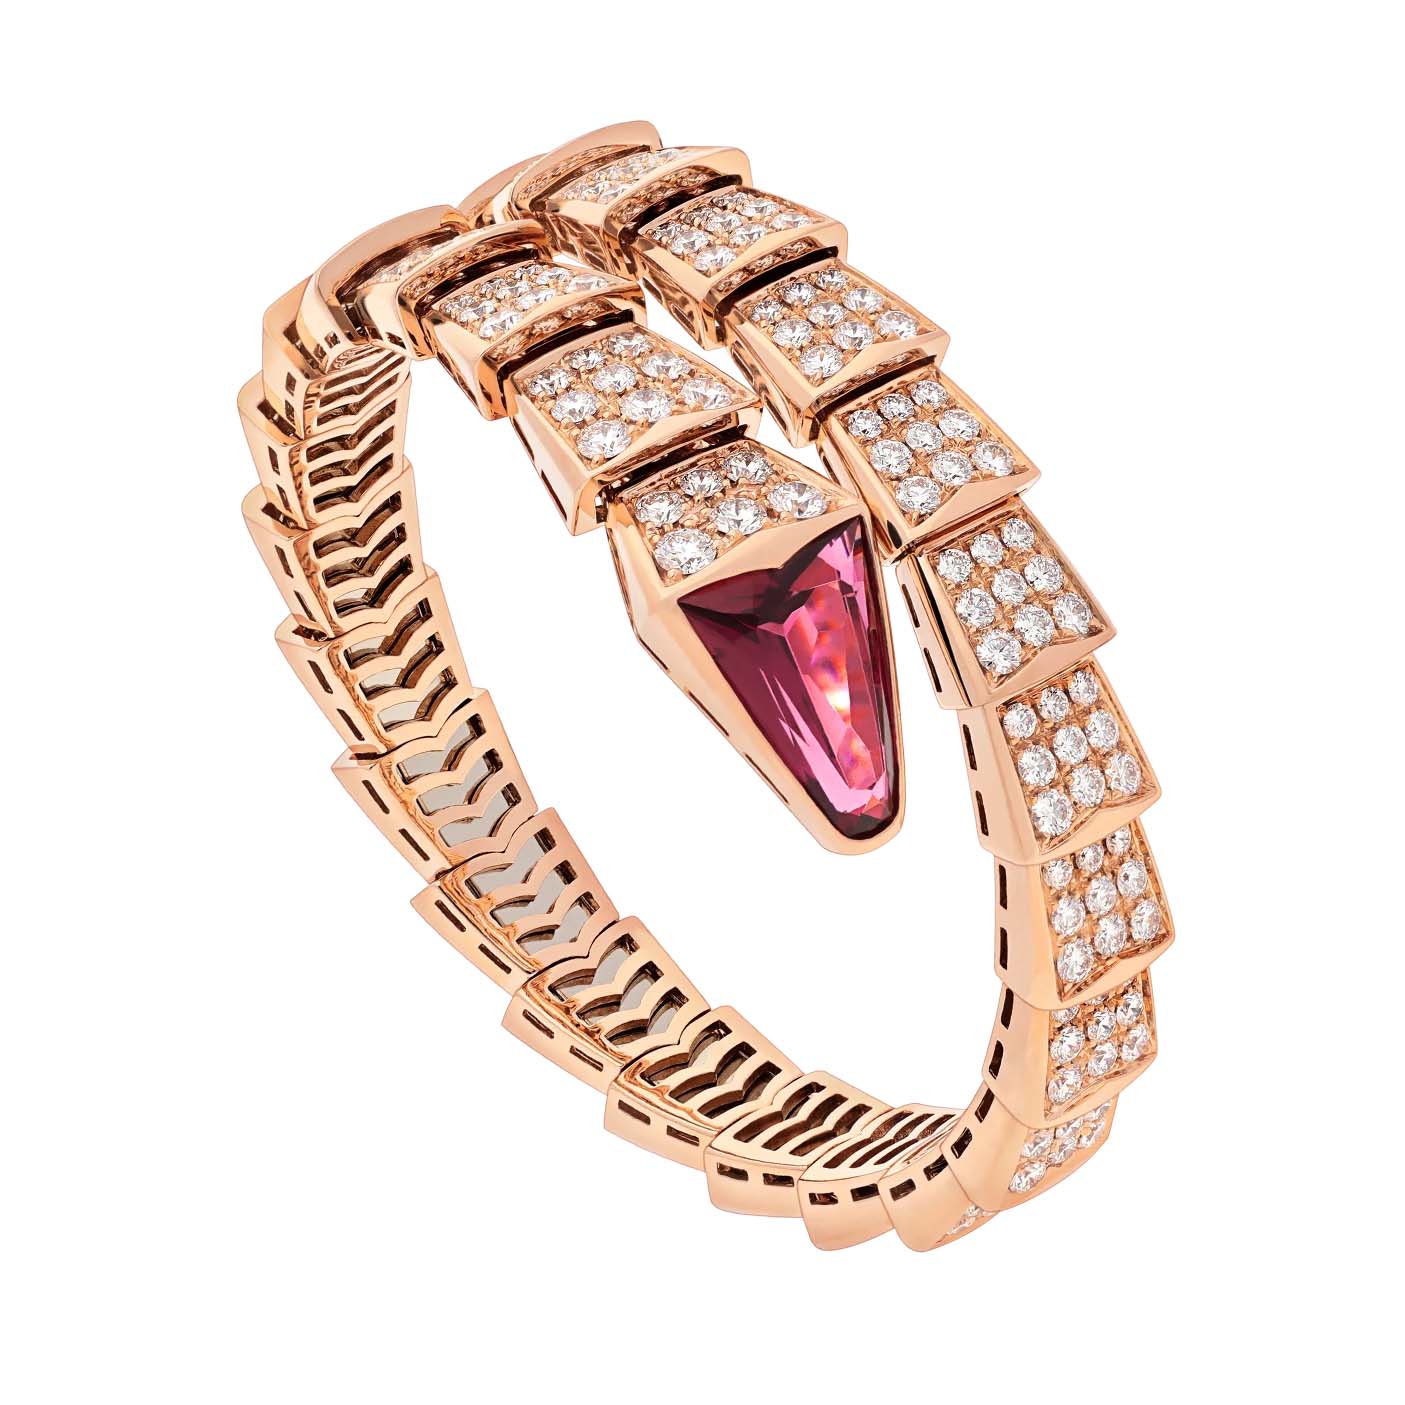 Velkoobchodní zakázková výroba šperků Tovární šperky OEM/ODM Šperky z jednoho spirálového náramku z 18kt růžového zlata plněné stříbrem 925